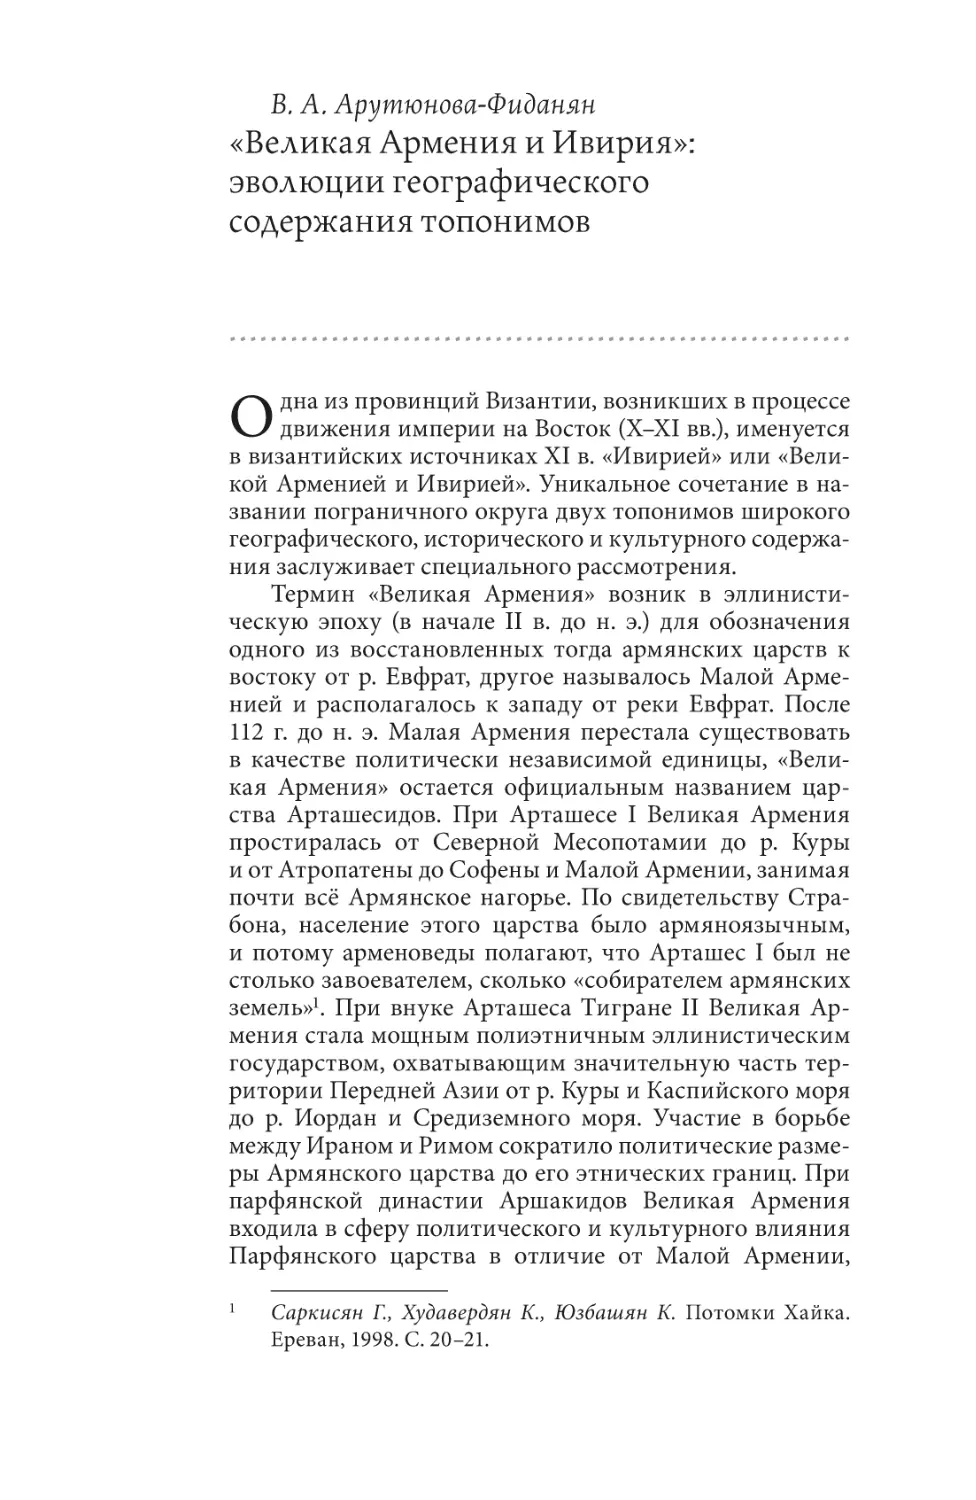 Арутюнова-Фиданян В. А. «Великая Армения и Ивирия»: эволюции географического содержания топонимов